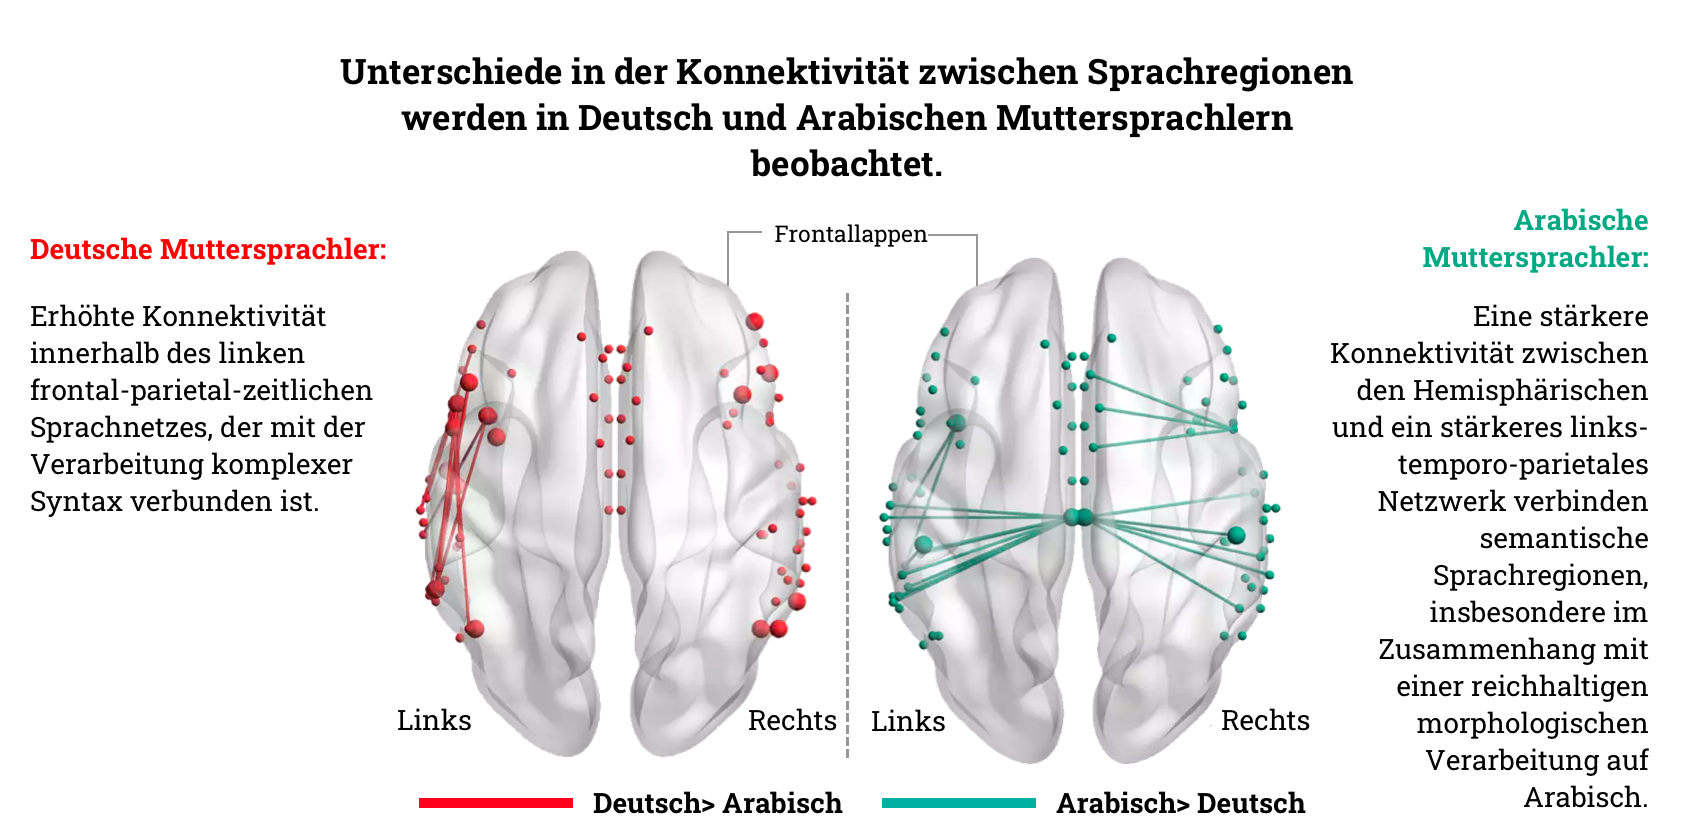 Verbesserte Verdrahtung im Gehirn von deutschen und arabischen Muttersprachlern, dargestellt auf einer Karte.